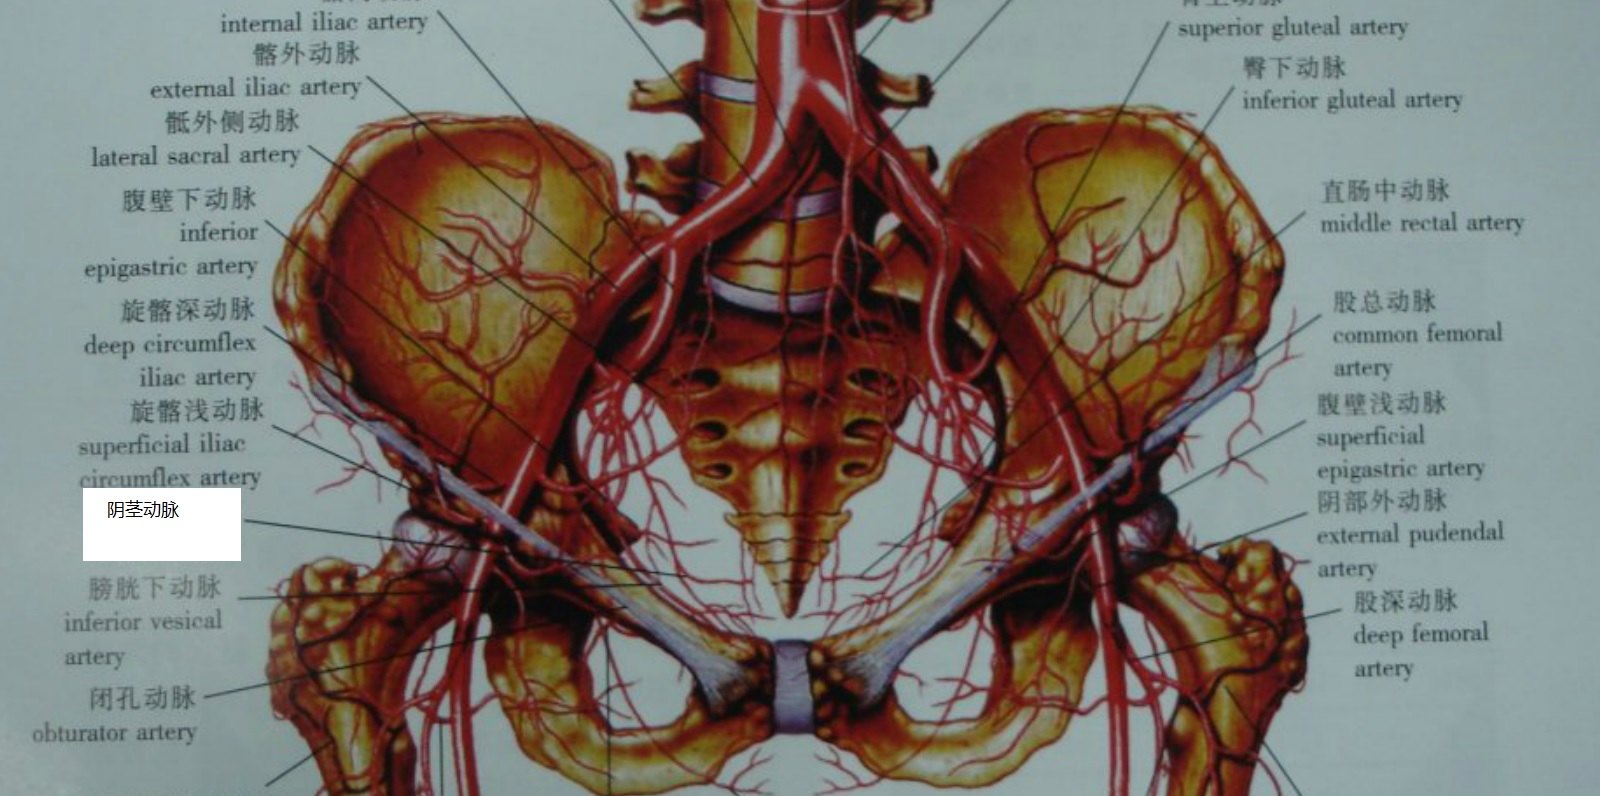 盆腔供血模式图主髂动脉闭塞ct二维重建影像主髂动脉闭塞,可见大量